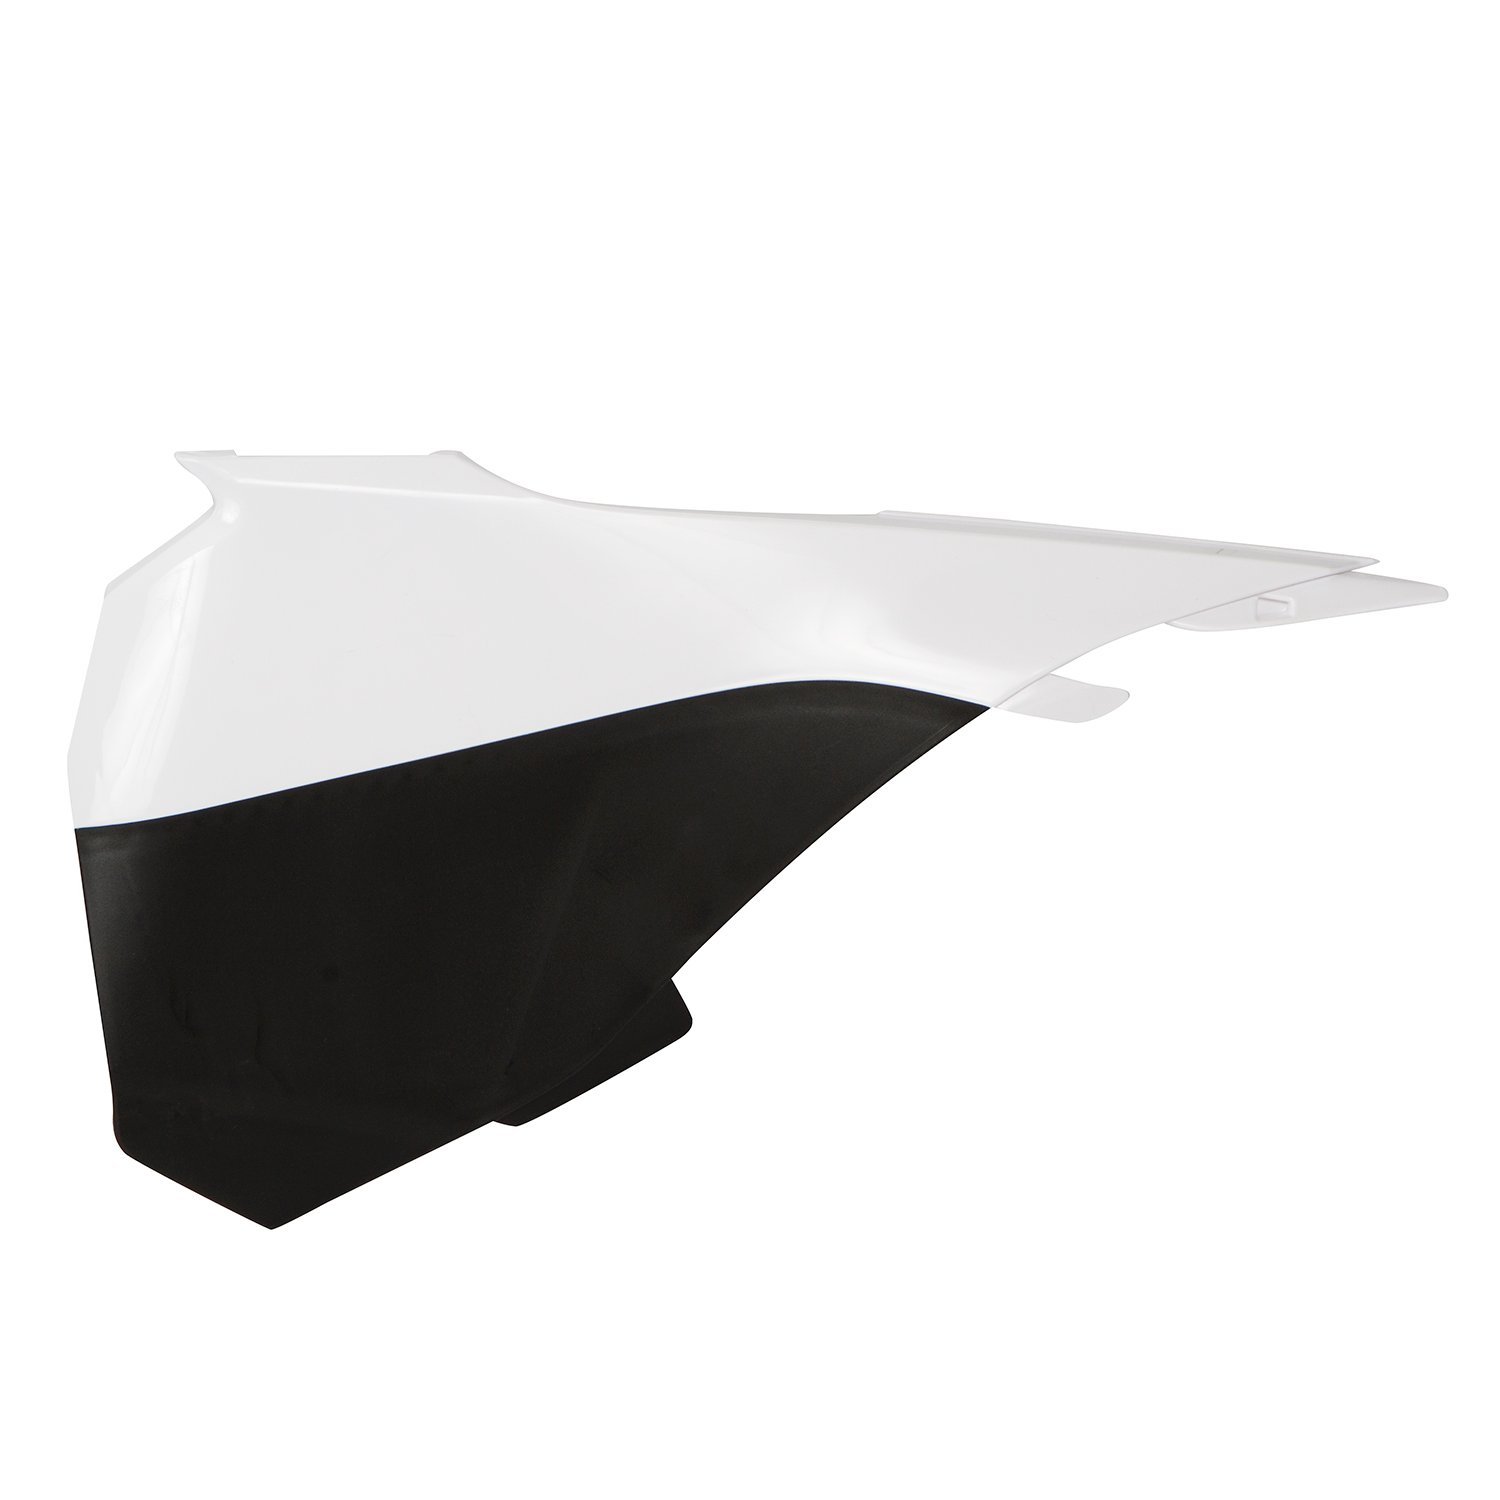 Acerbis Air Box Cover  KTM SX 85 13-17, White/Black